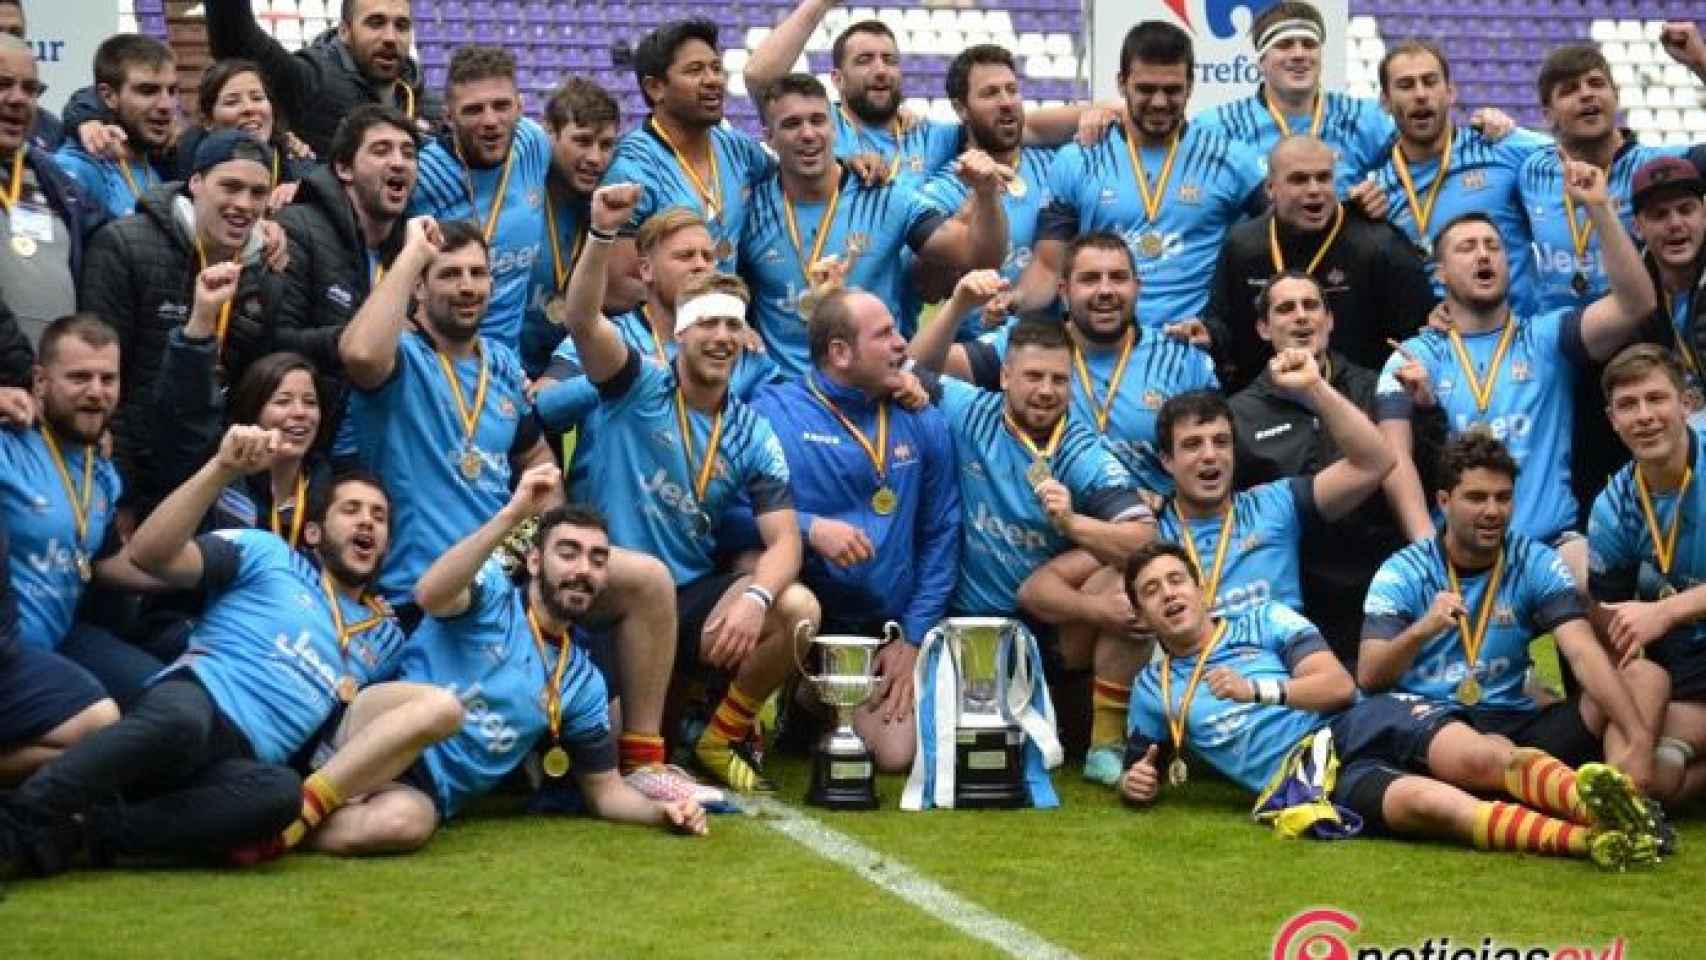 celebracion final copa rugby santboiana el salvador valladolid 2017 30